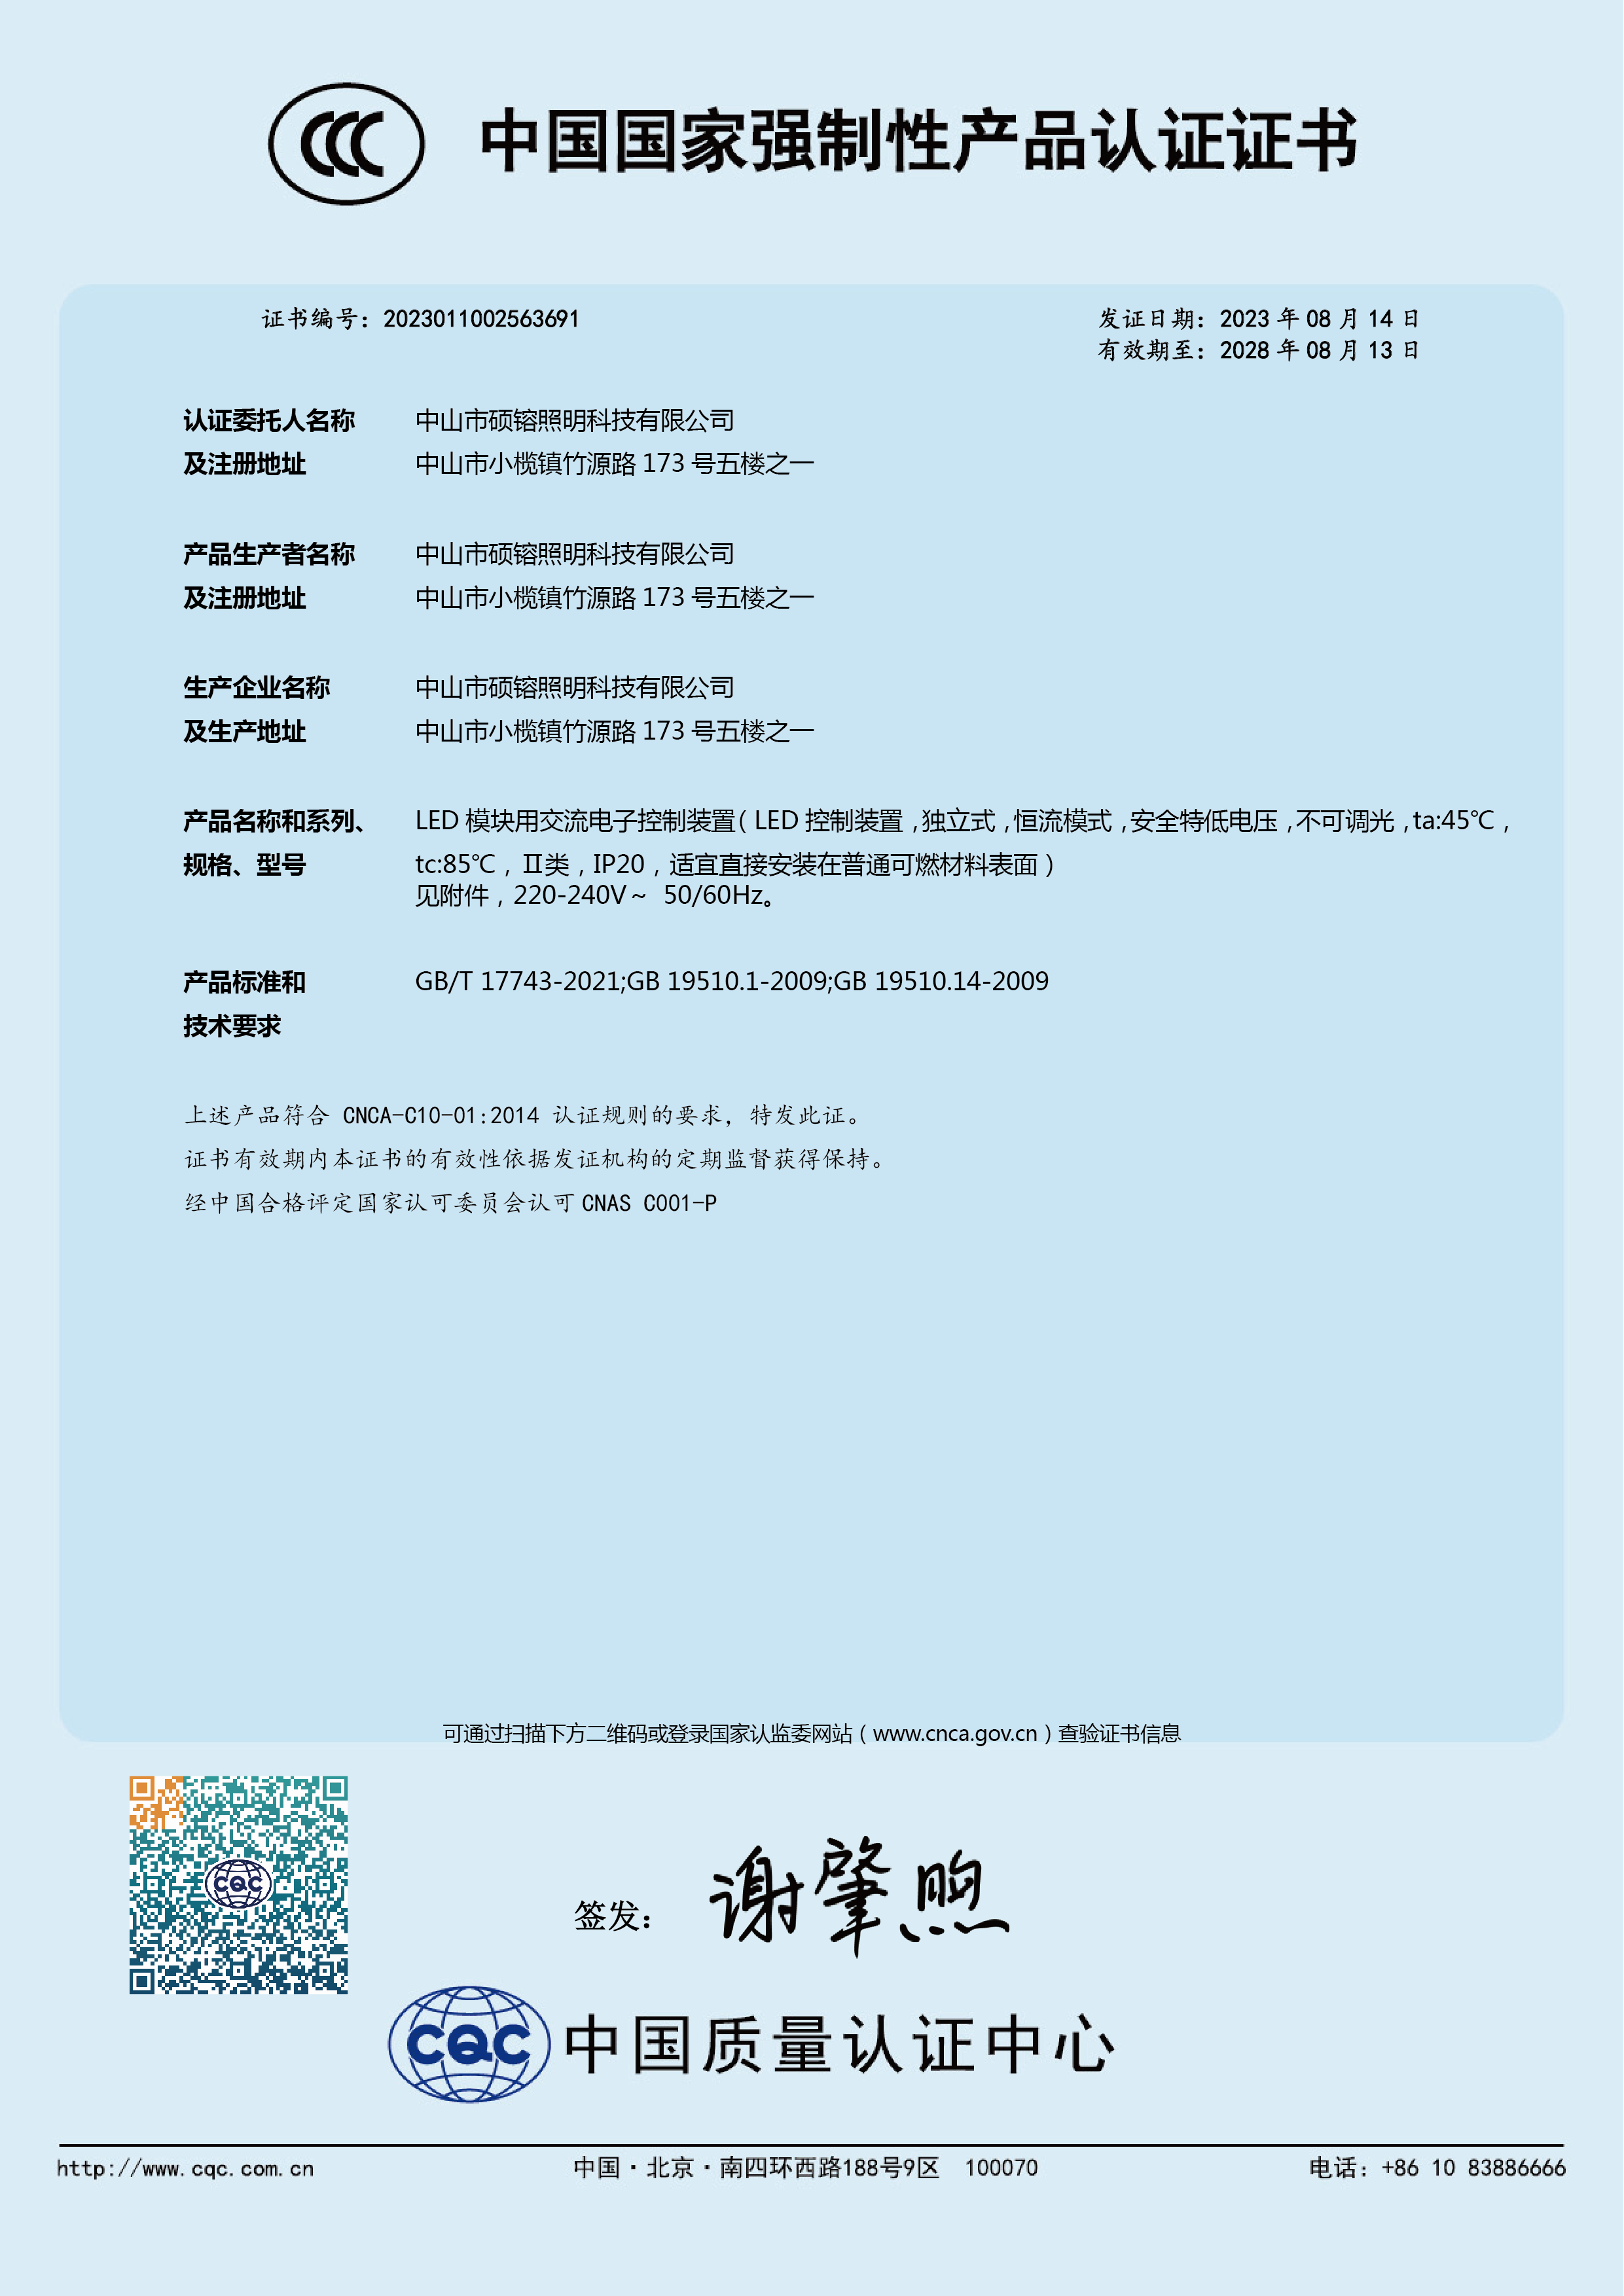 Certificate CCC5